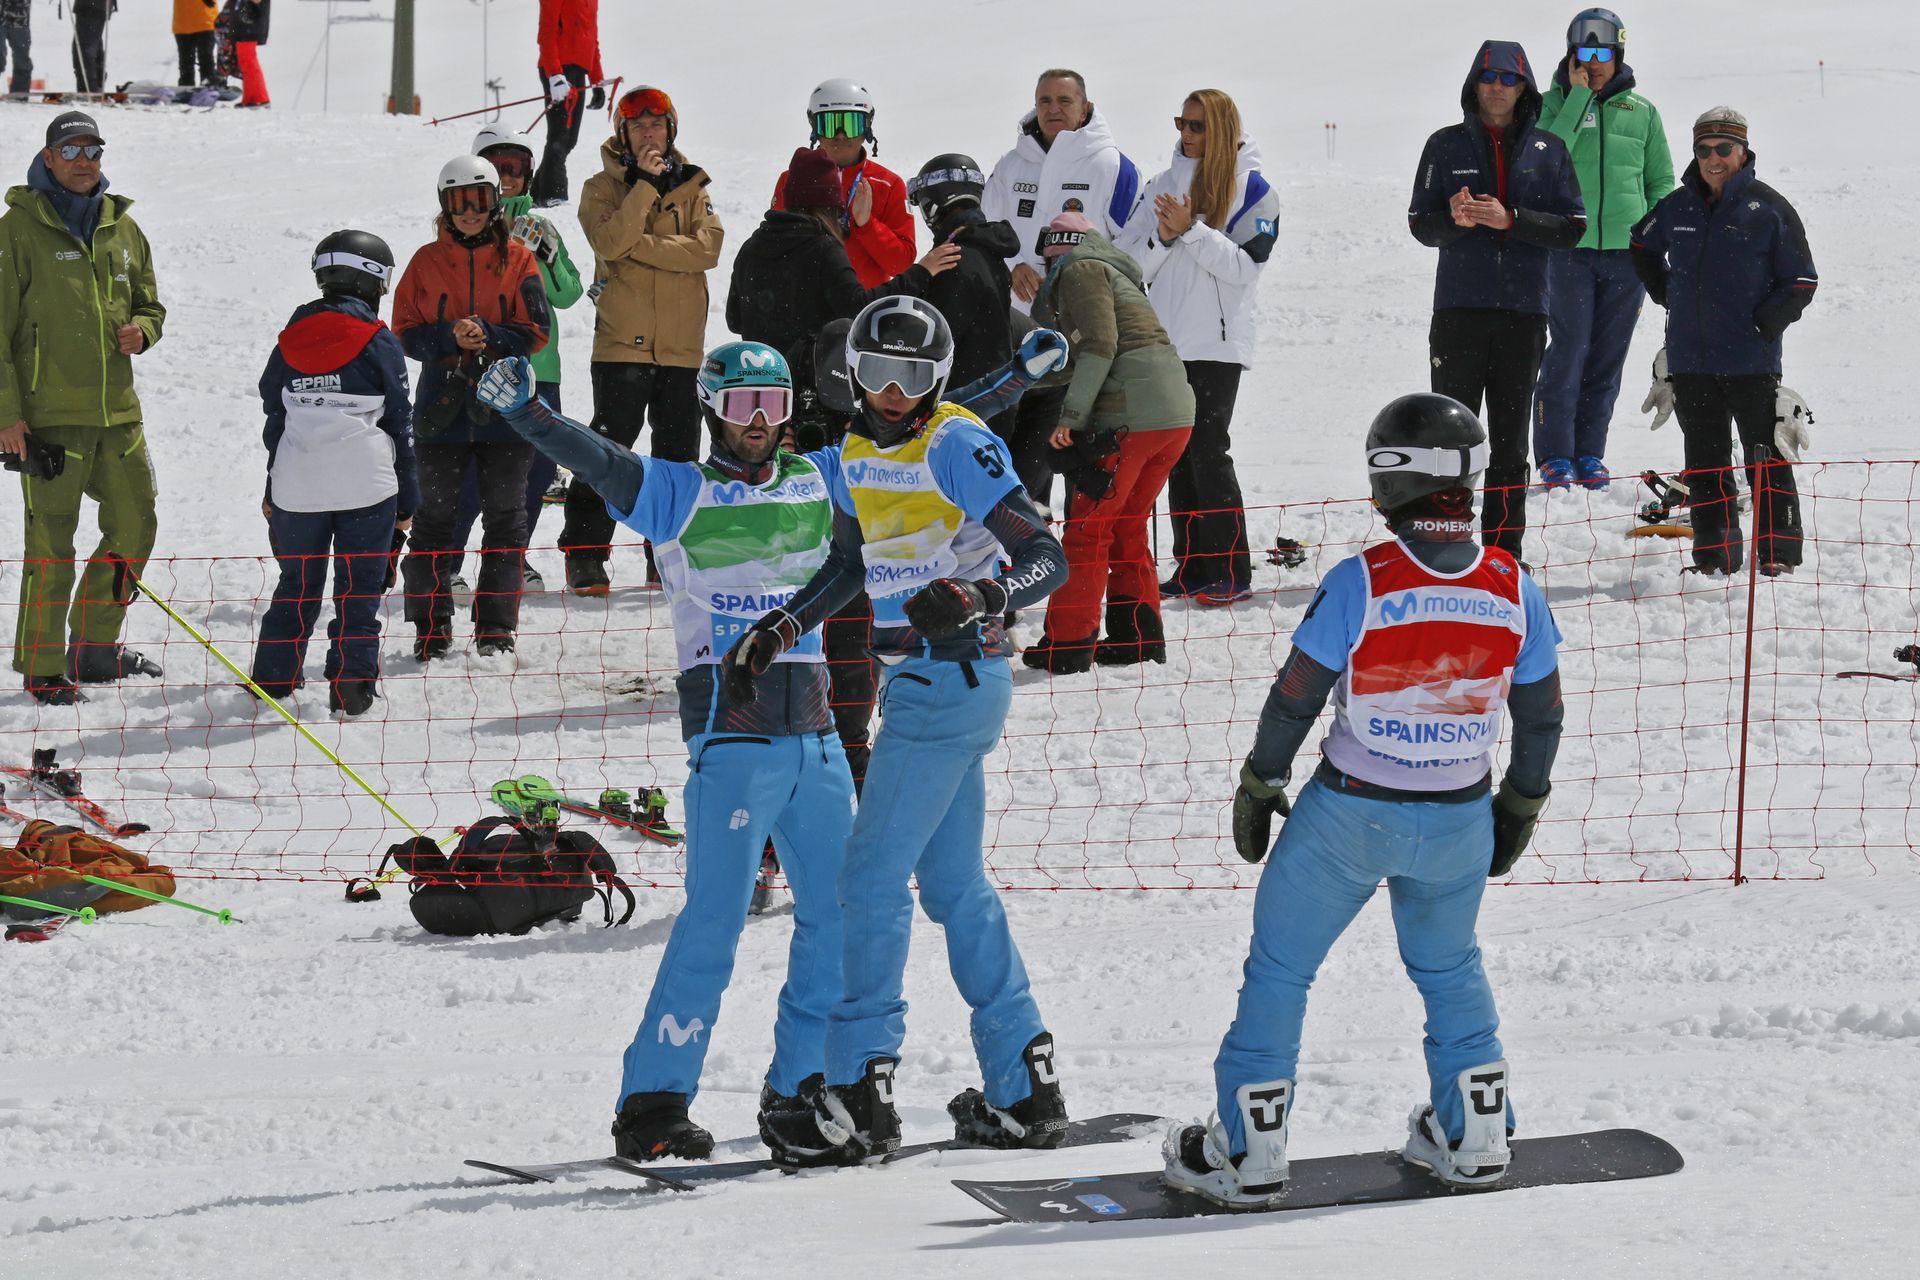 Imágenes carrera snowboarcross Baqueira Beret 2022